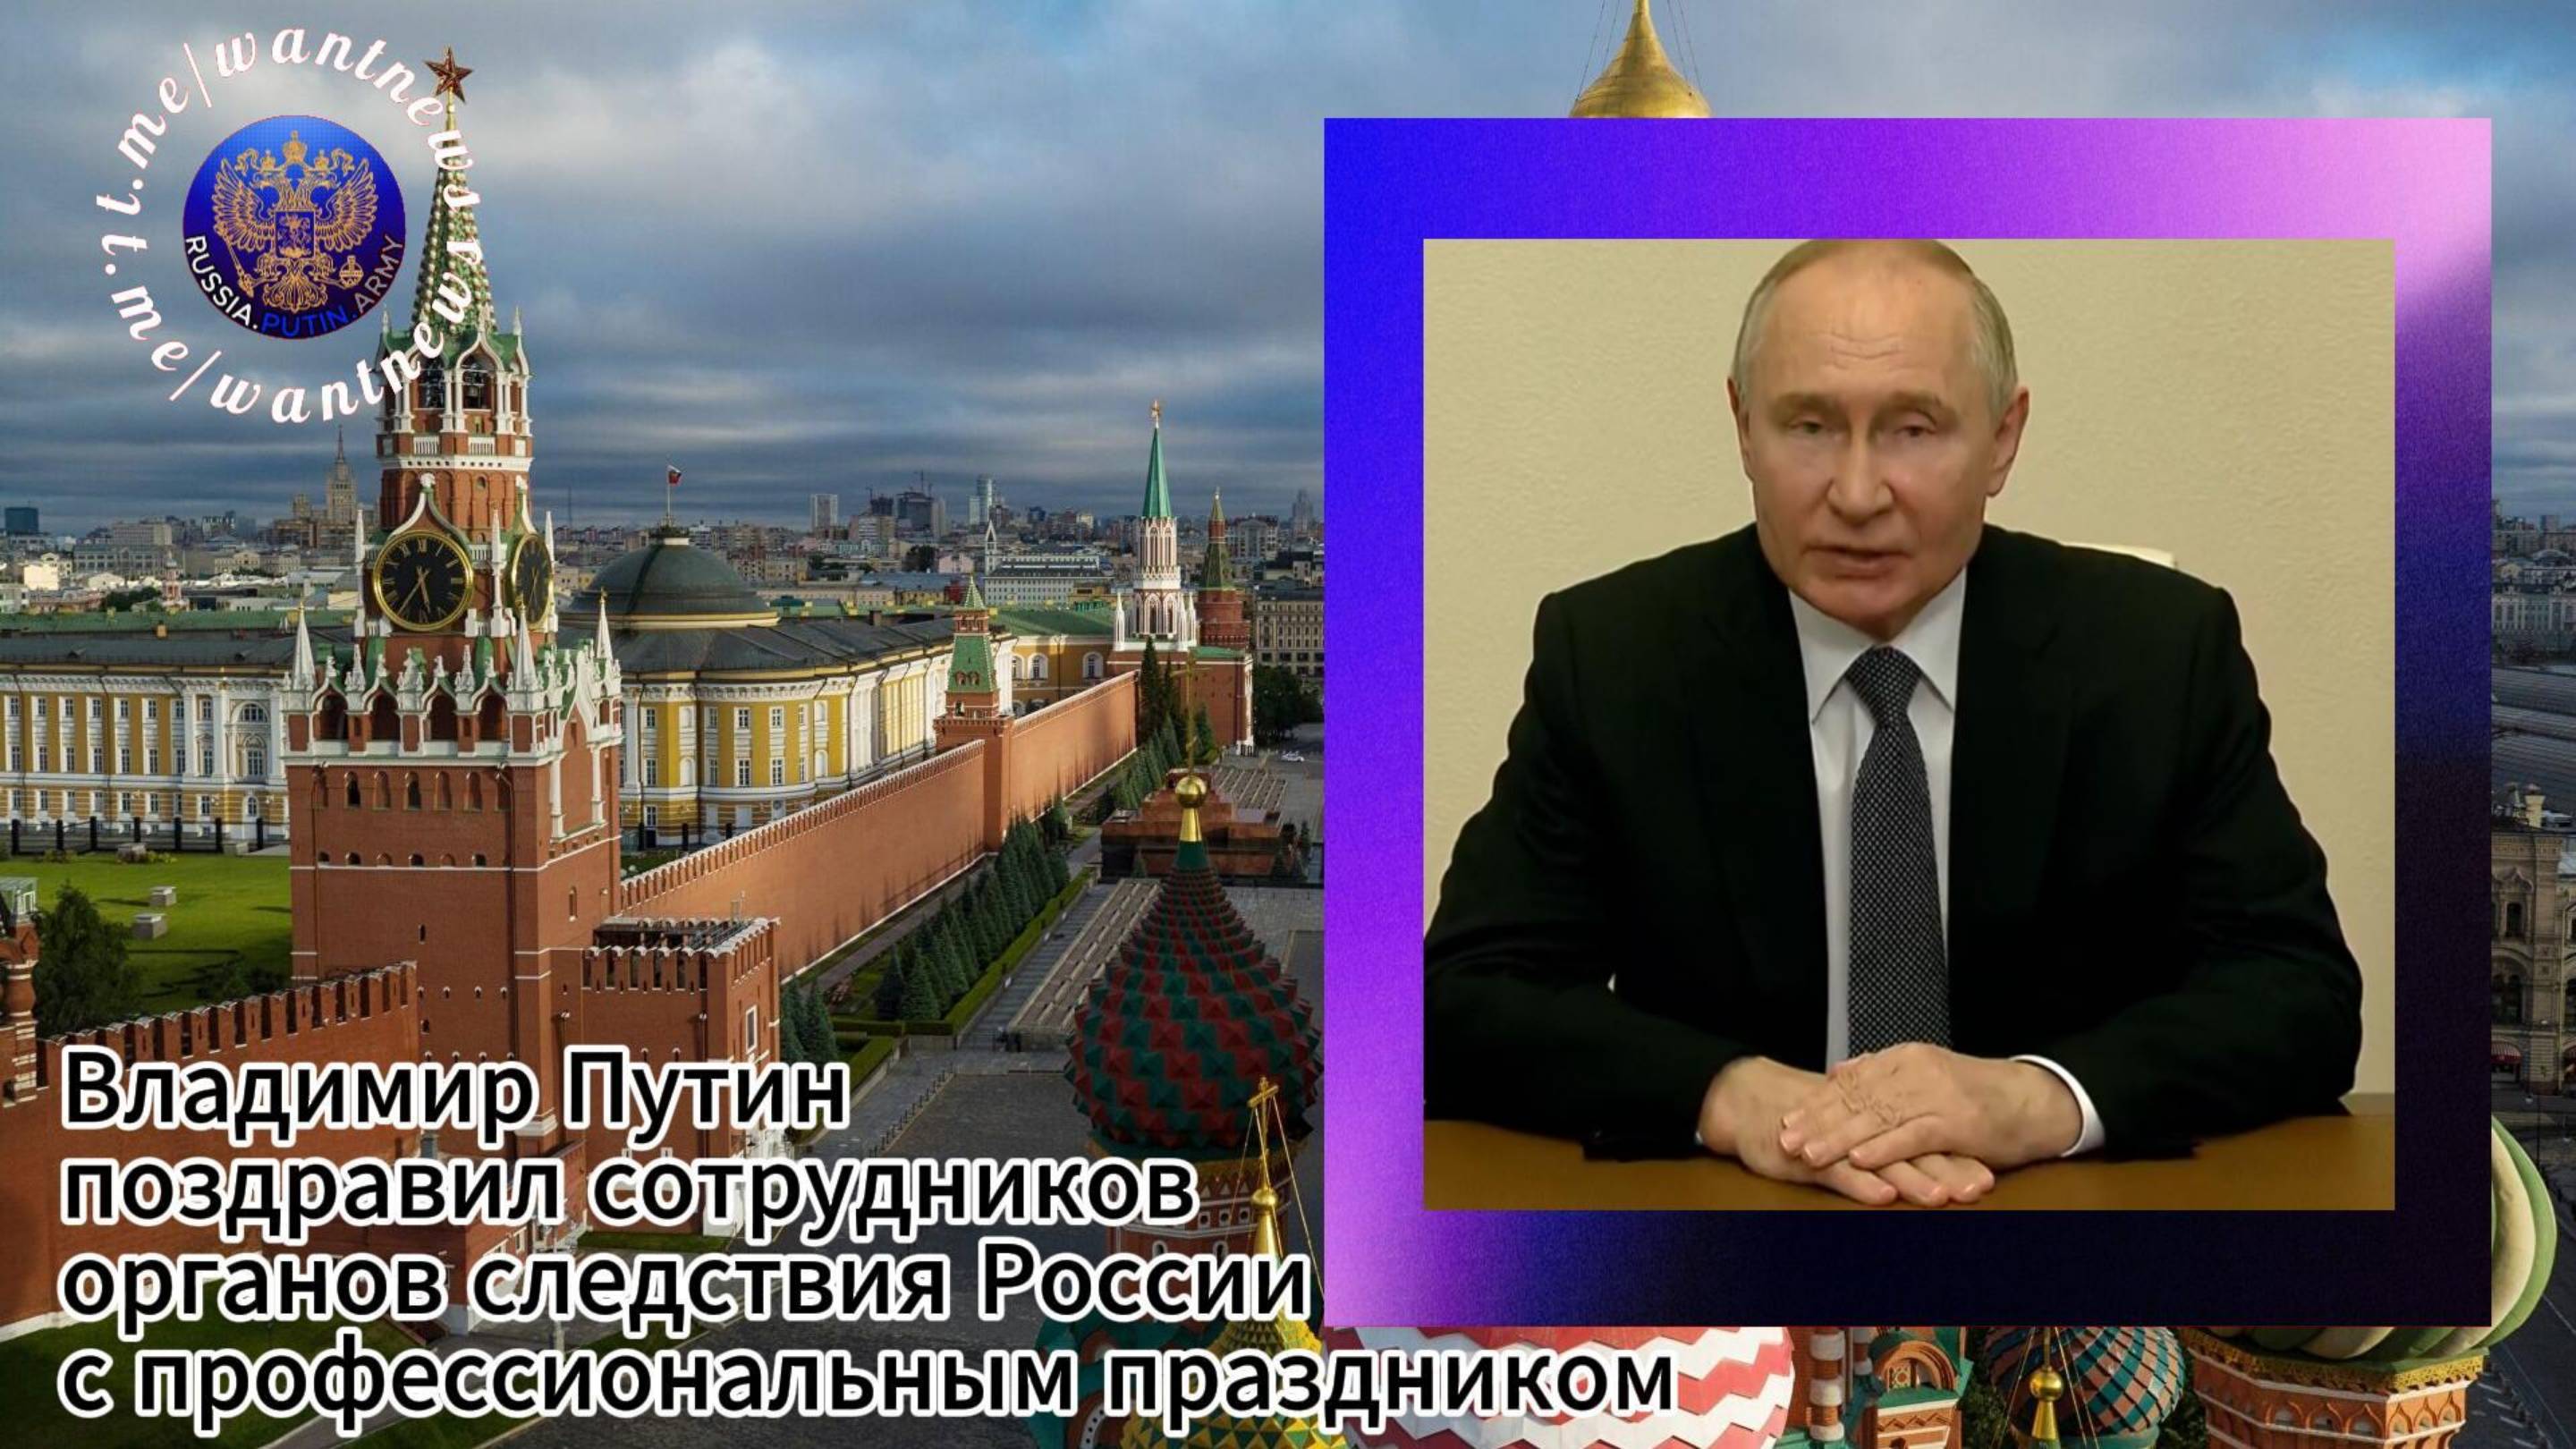 ❗️Владимир Путин поздравил сотрудников органов следствия России с профессиональным праздником🎆